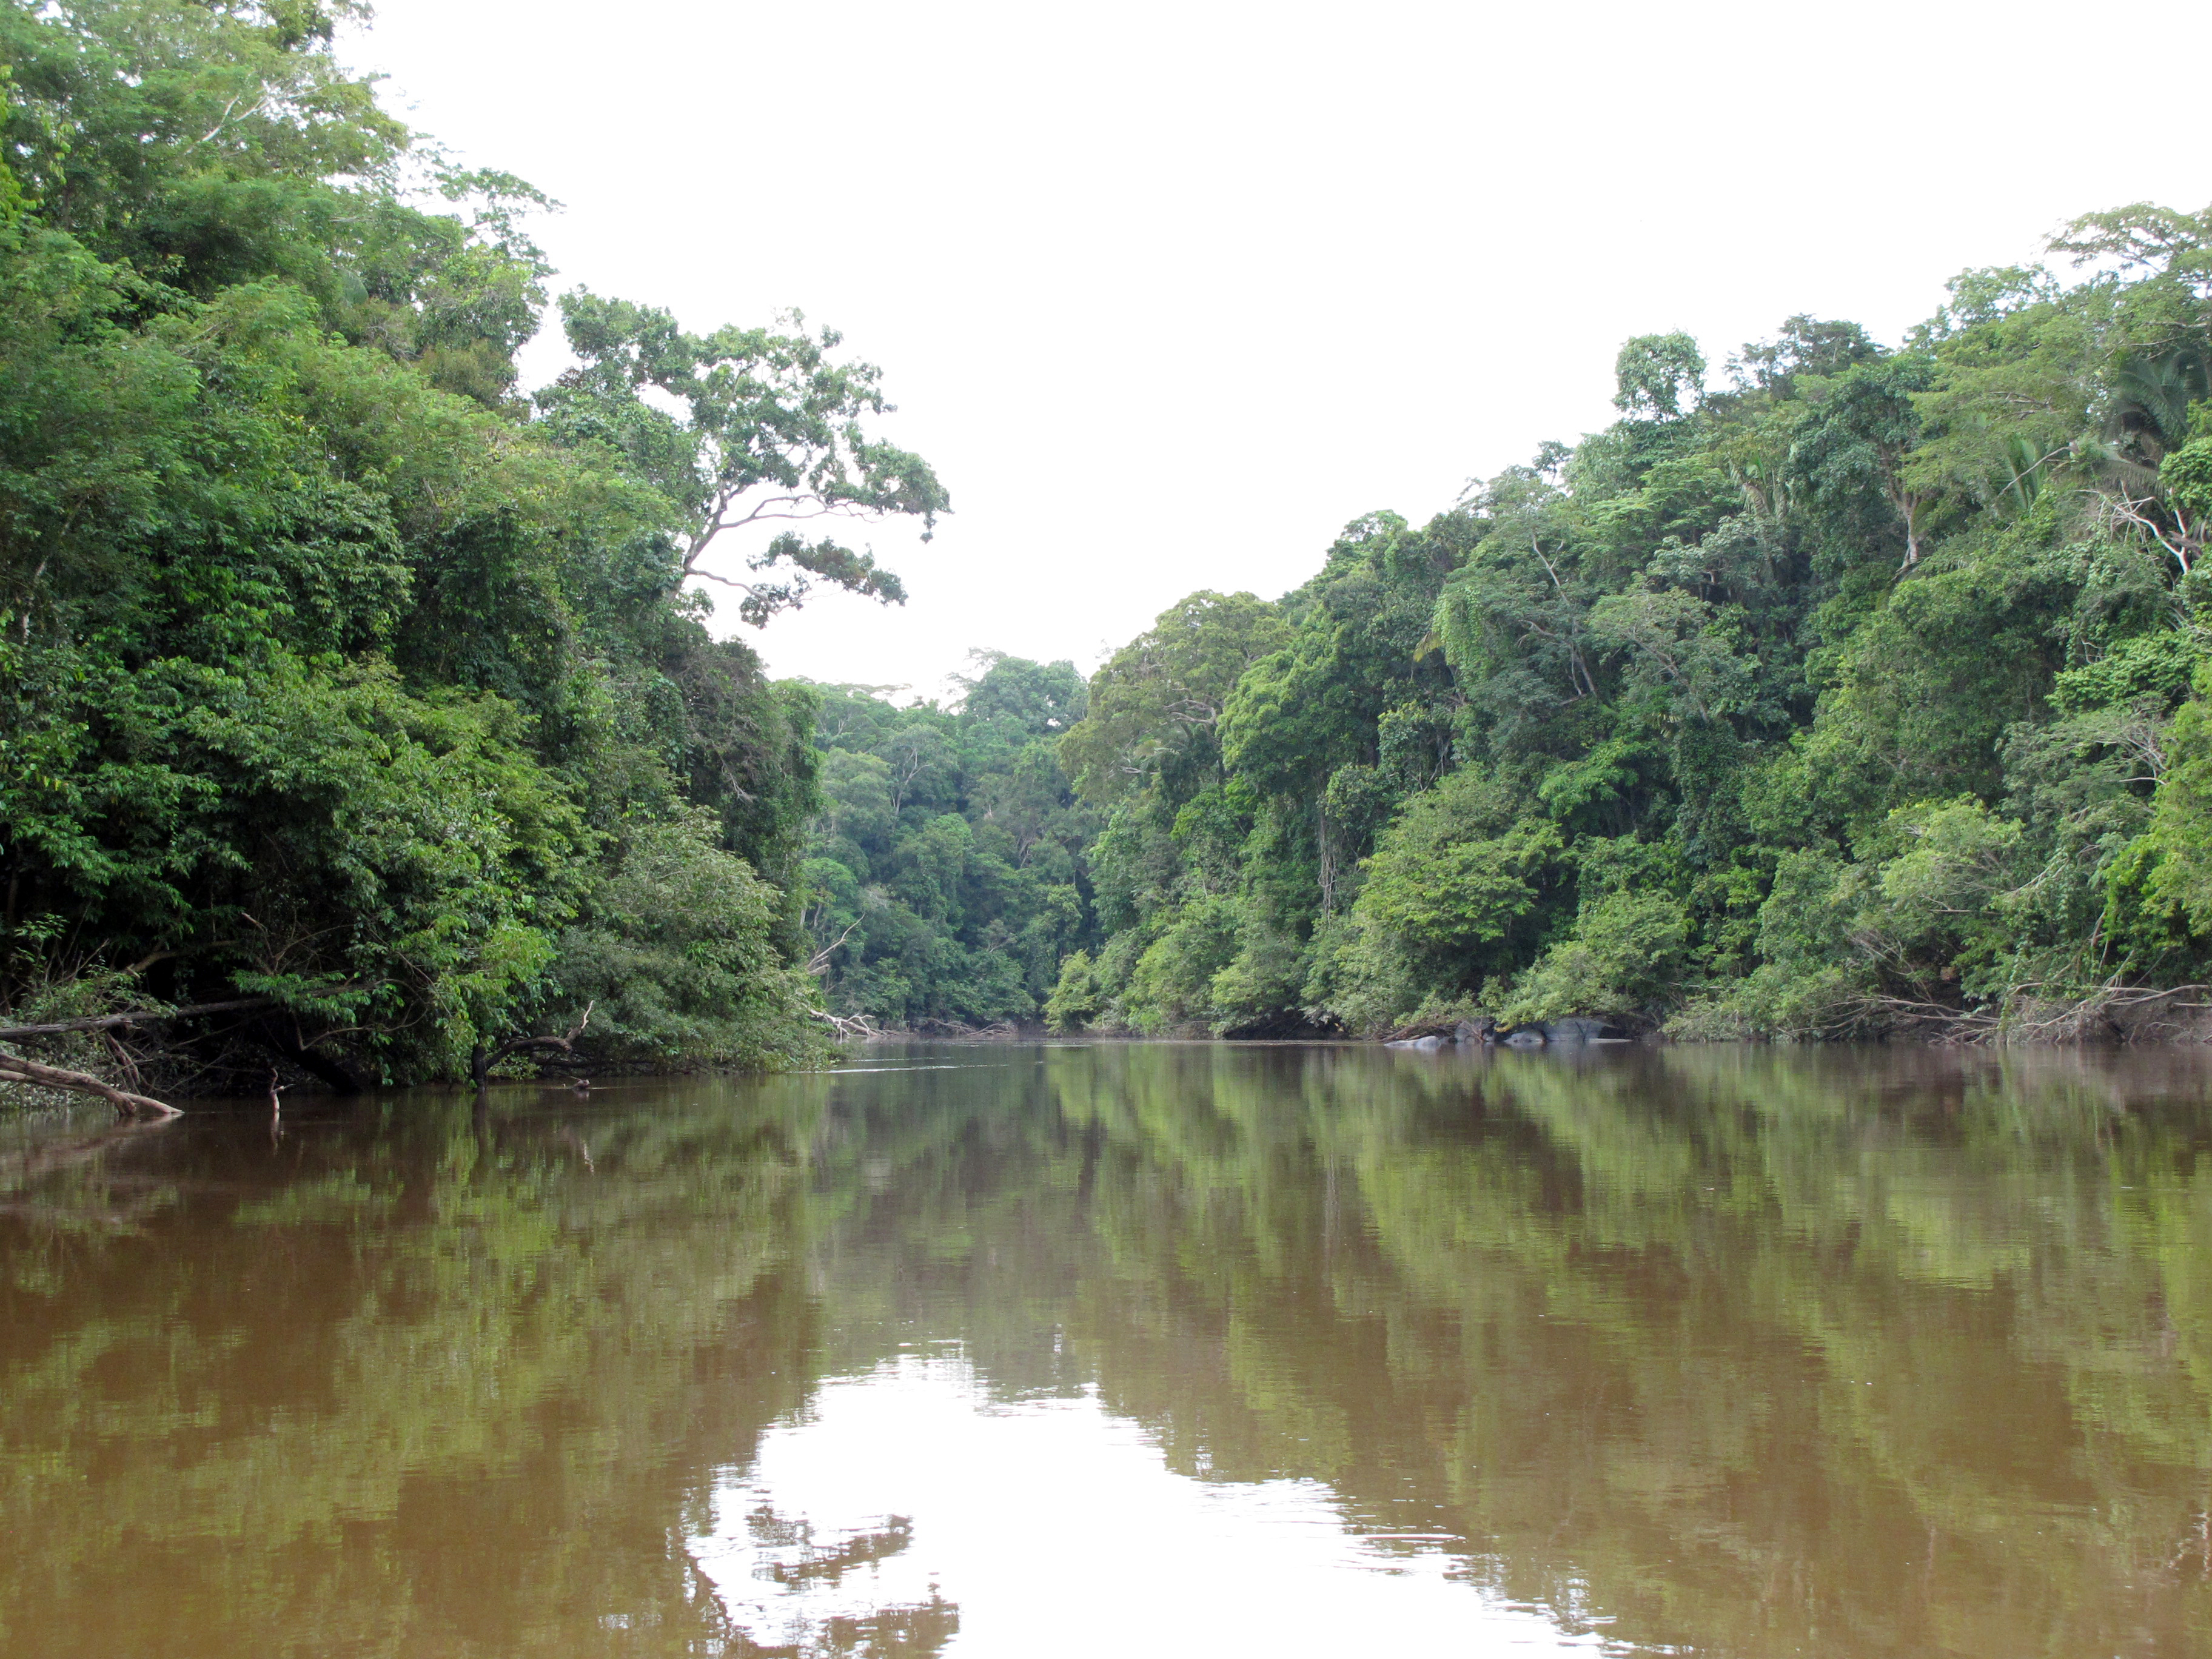 Rio Guariba, durante a Expedição Guariba-Roosevelt 2010.